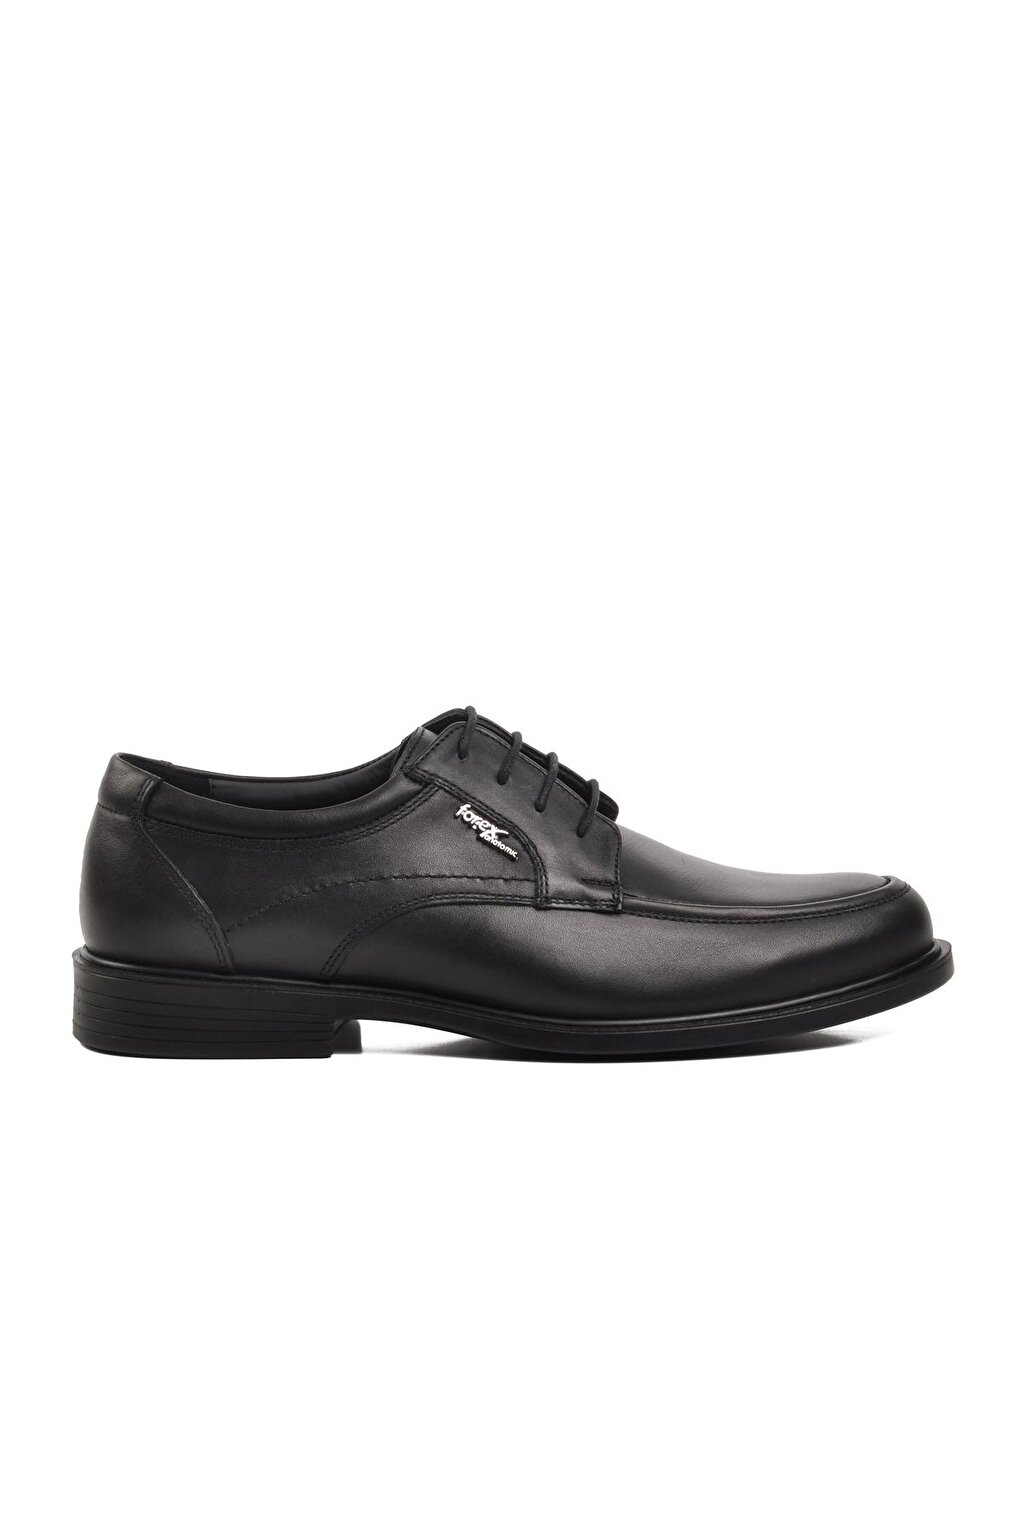 2716 Черные мужские классические туфли из натуральной кожи Ayakmod